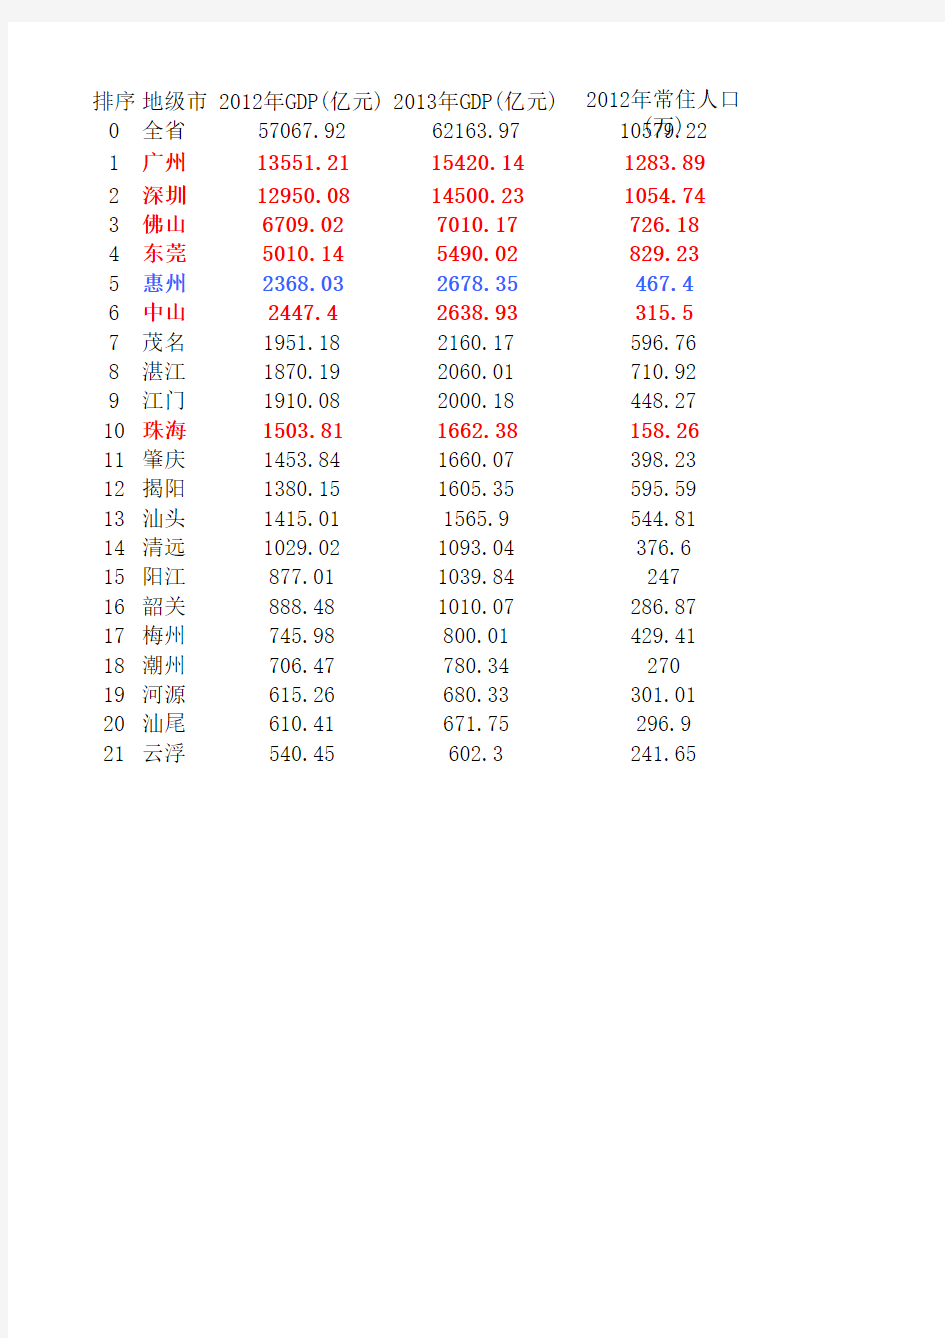 2013年广东各市GDP和人均GDP排名